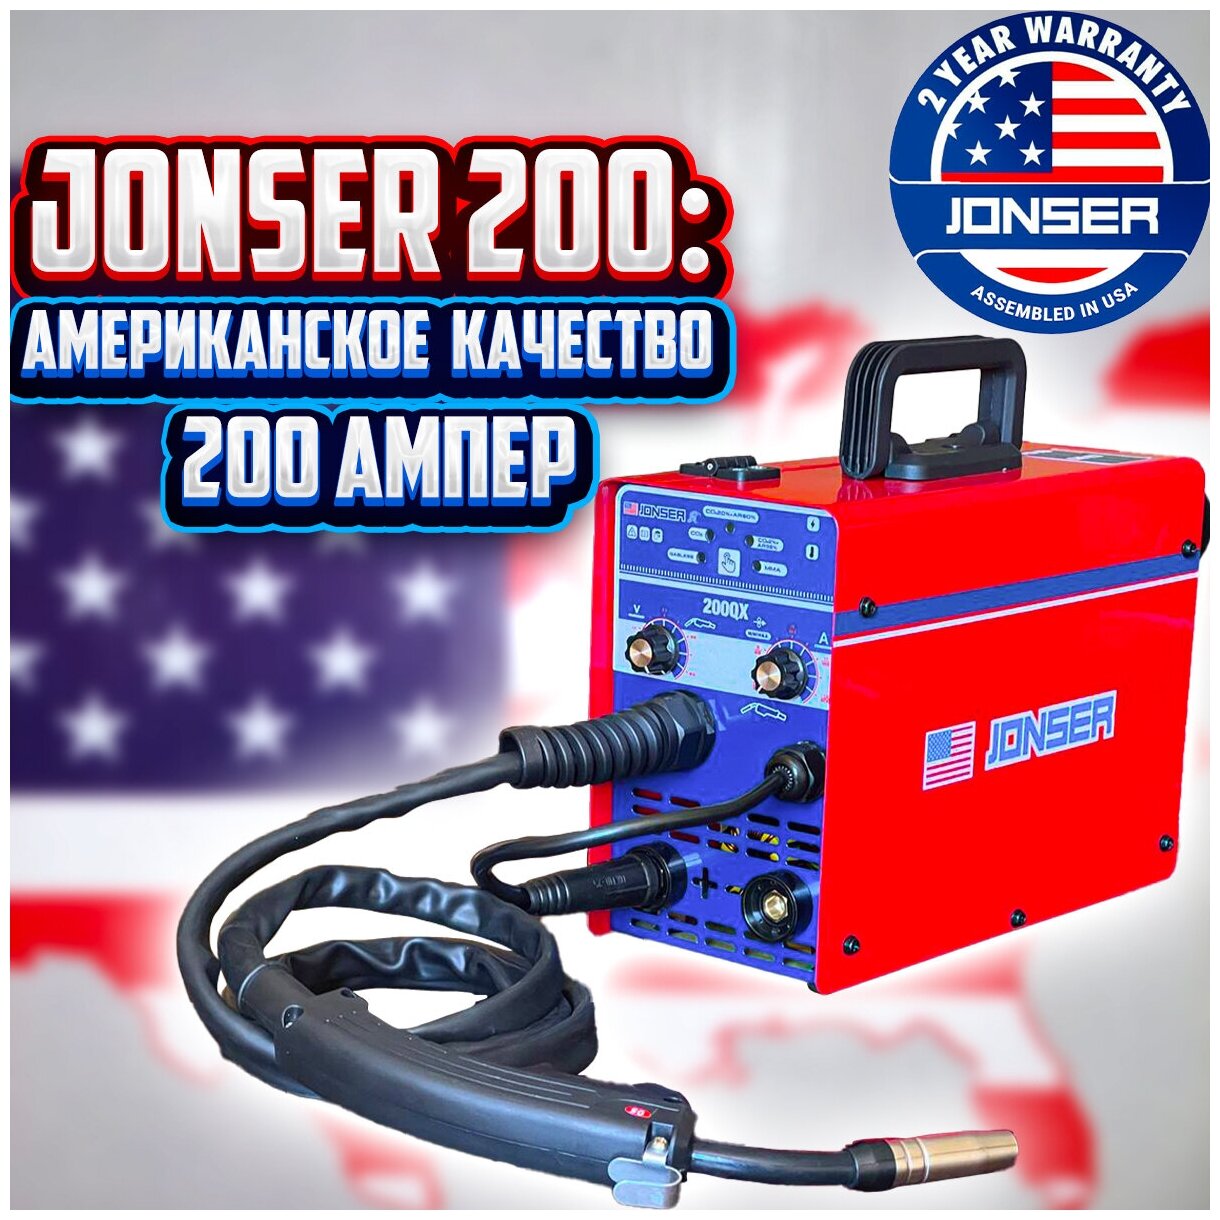 Сварочный полуавтомат JONSER 200 QX. Сварочный аппарат полуавтомат для ремонта/полуавтомат для сварки/сварочное оборудование.